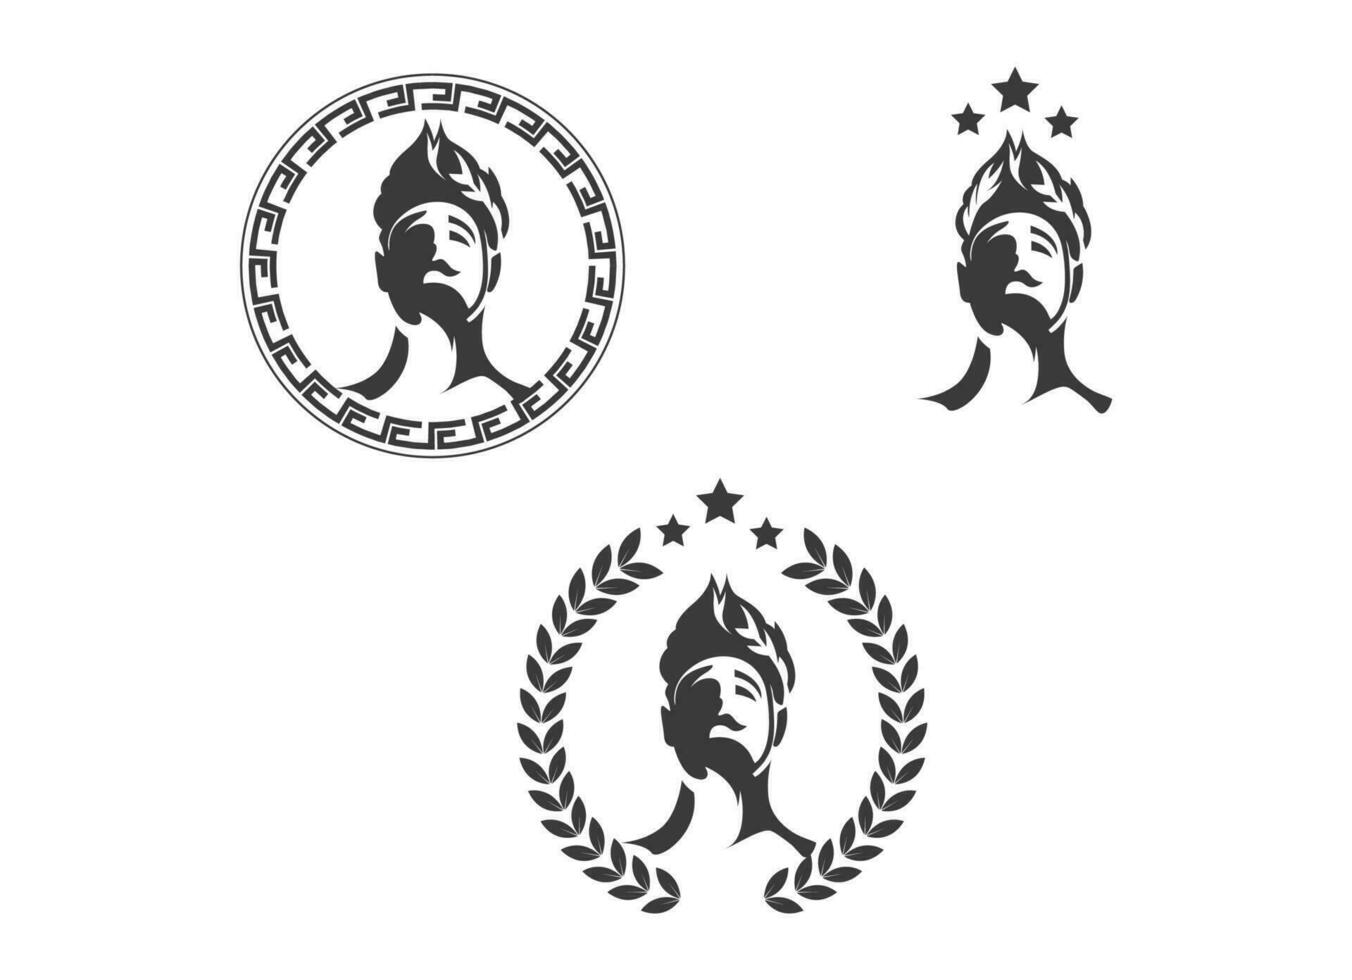 Griekse god hoofd dragen lauwerkrans standbeeld pictogram logo ontwerp illustratie vector in trendy minimale en eenvoudige lijnstijl. oude Griekse figuur gezicht hoofd standbeeld beeldhouwkunst.